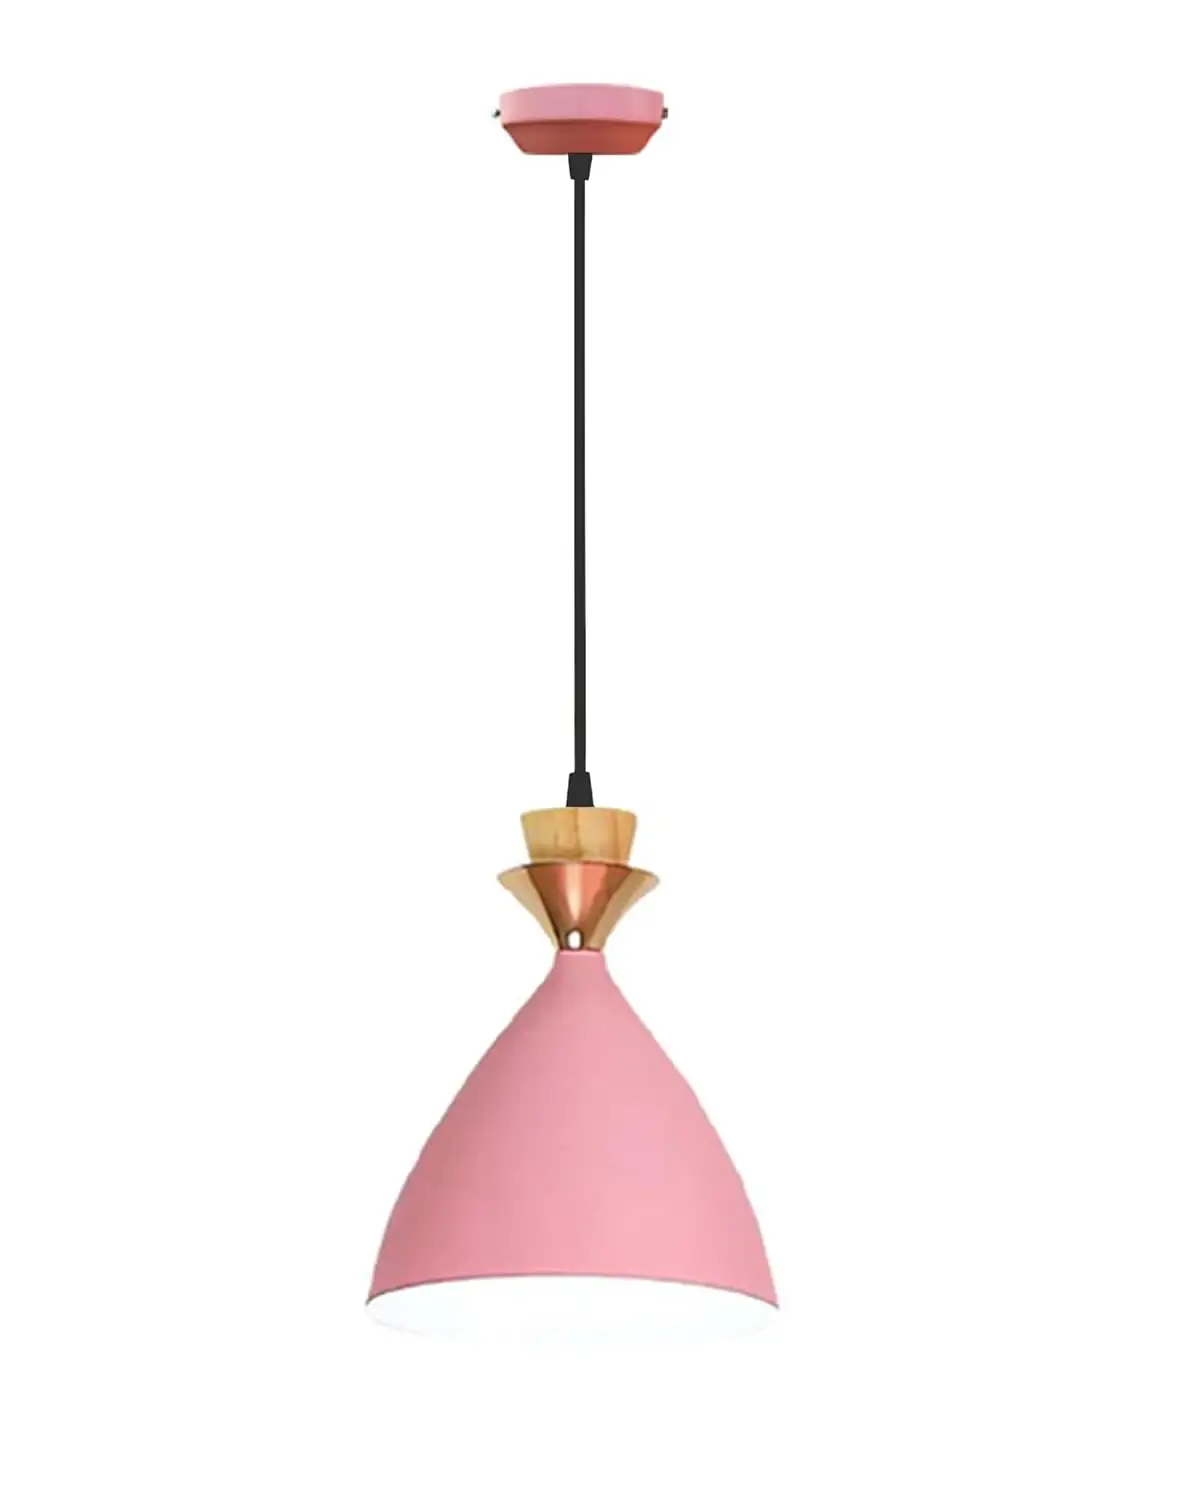 Розовый цвет Широкий Потолочный подвесной светильник золотистого цвета с индивидуальным цветом и размерами размером 16x16,25x20 см